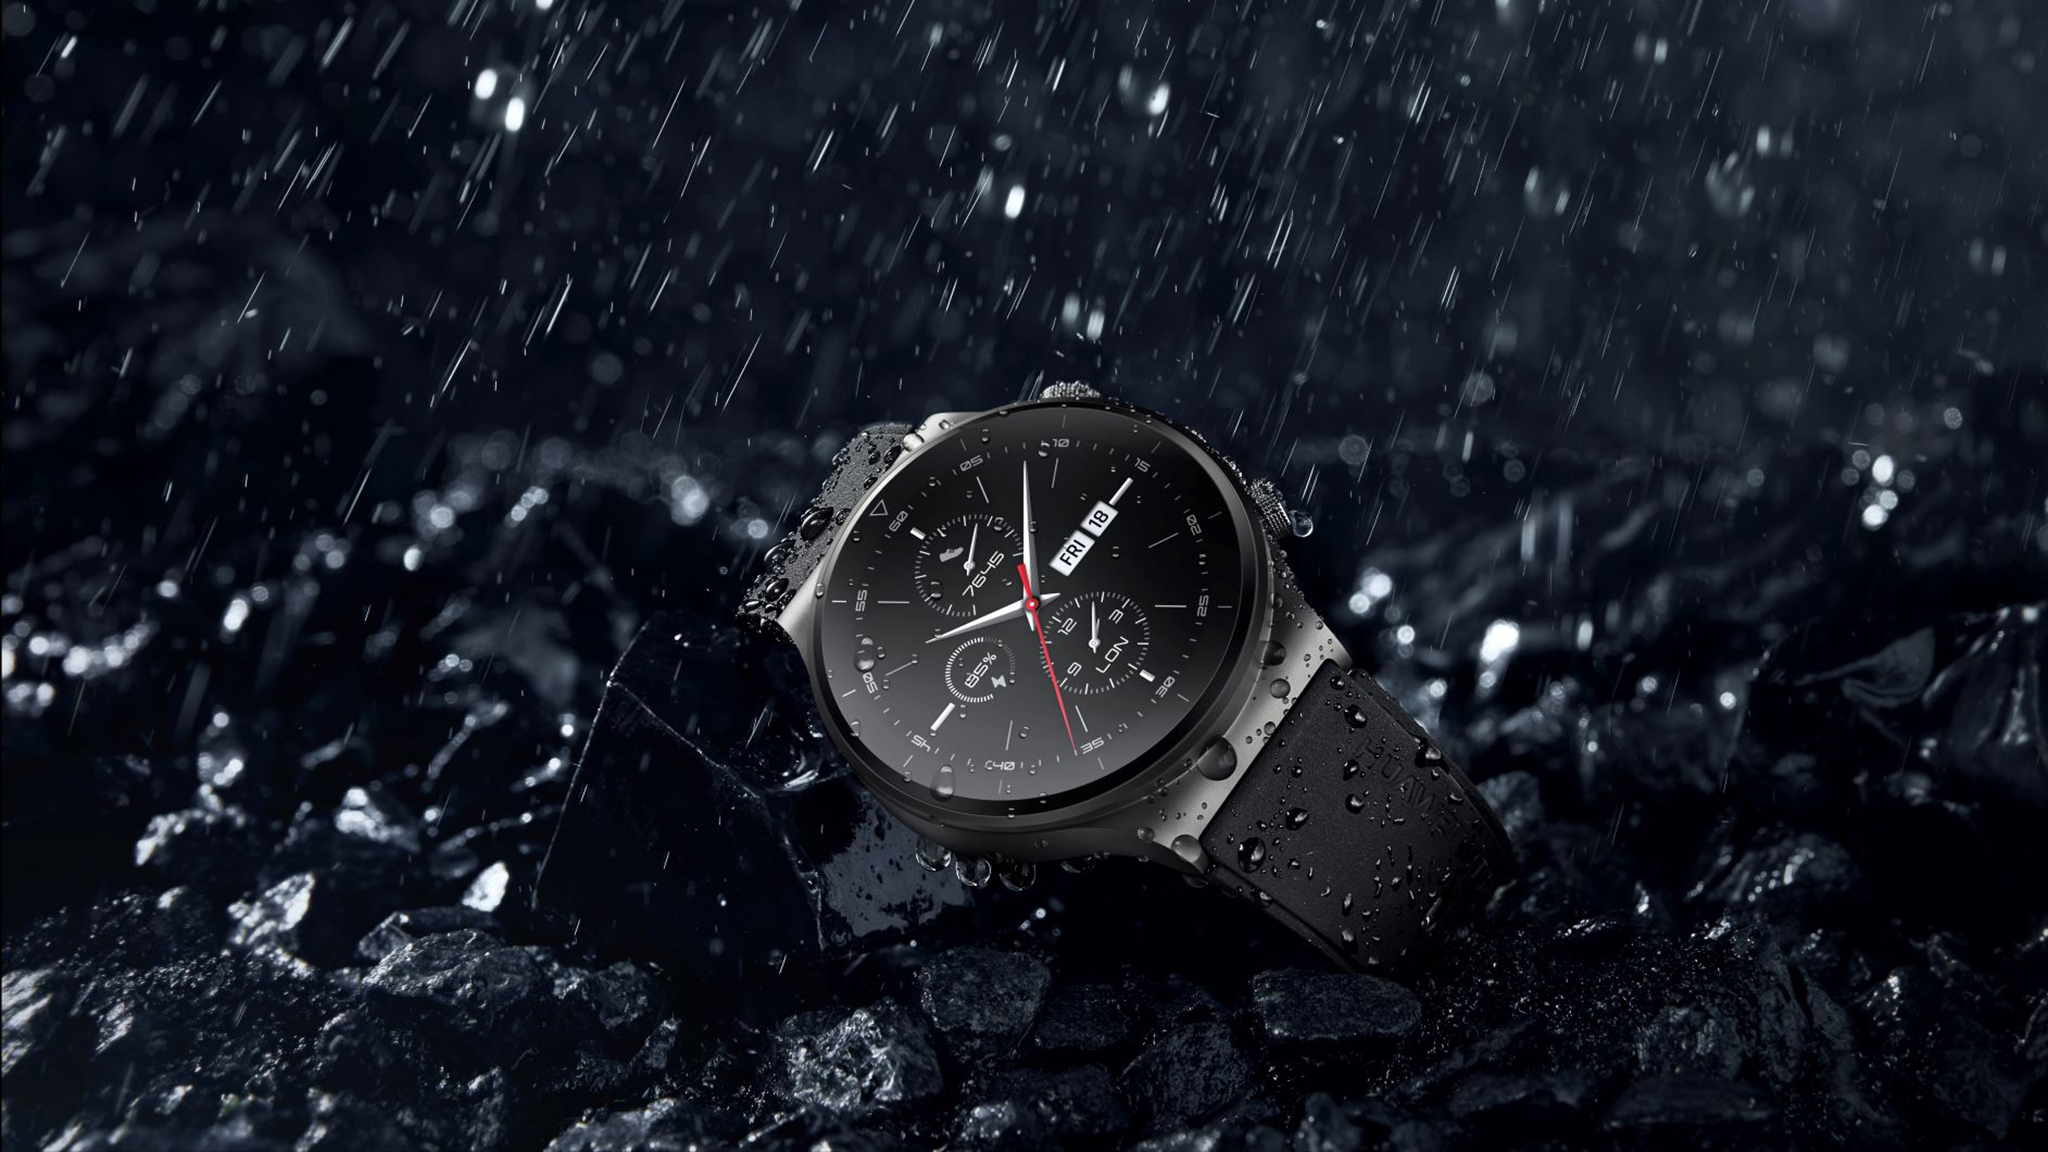 Huawei Watch GT 2 Pro ra mắt: Hoàn thiện cao cấp, nhiều chế độ luyện tập, pin 2 tuần, giá từ 8.99 triệu đồng - Ảnh 3.